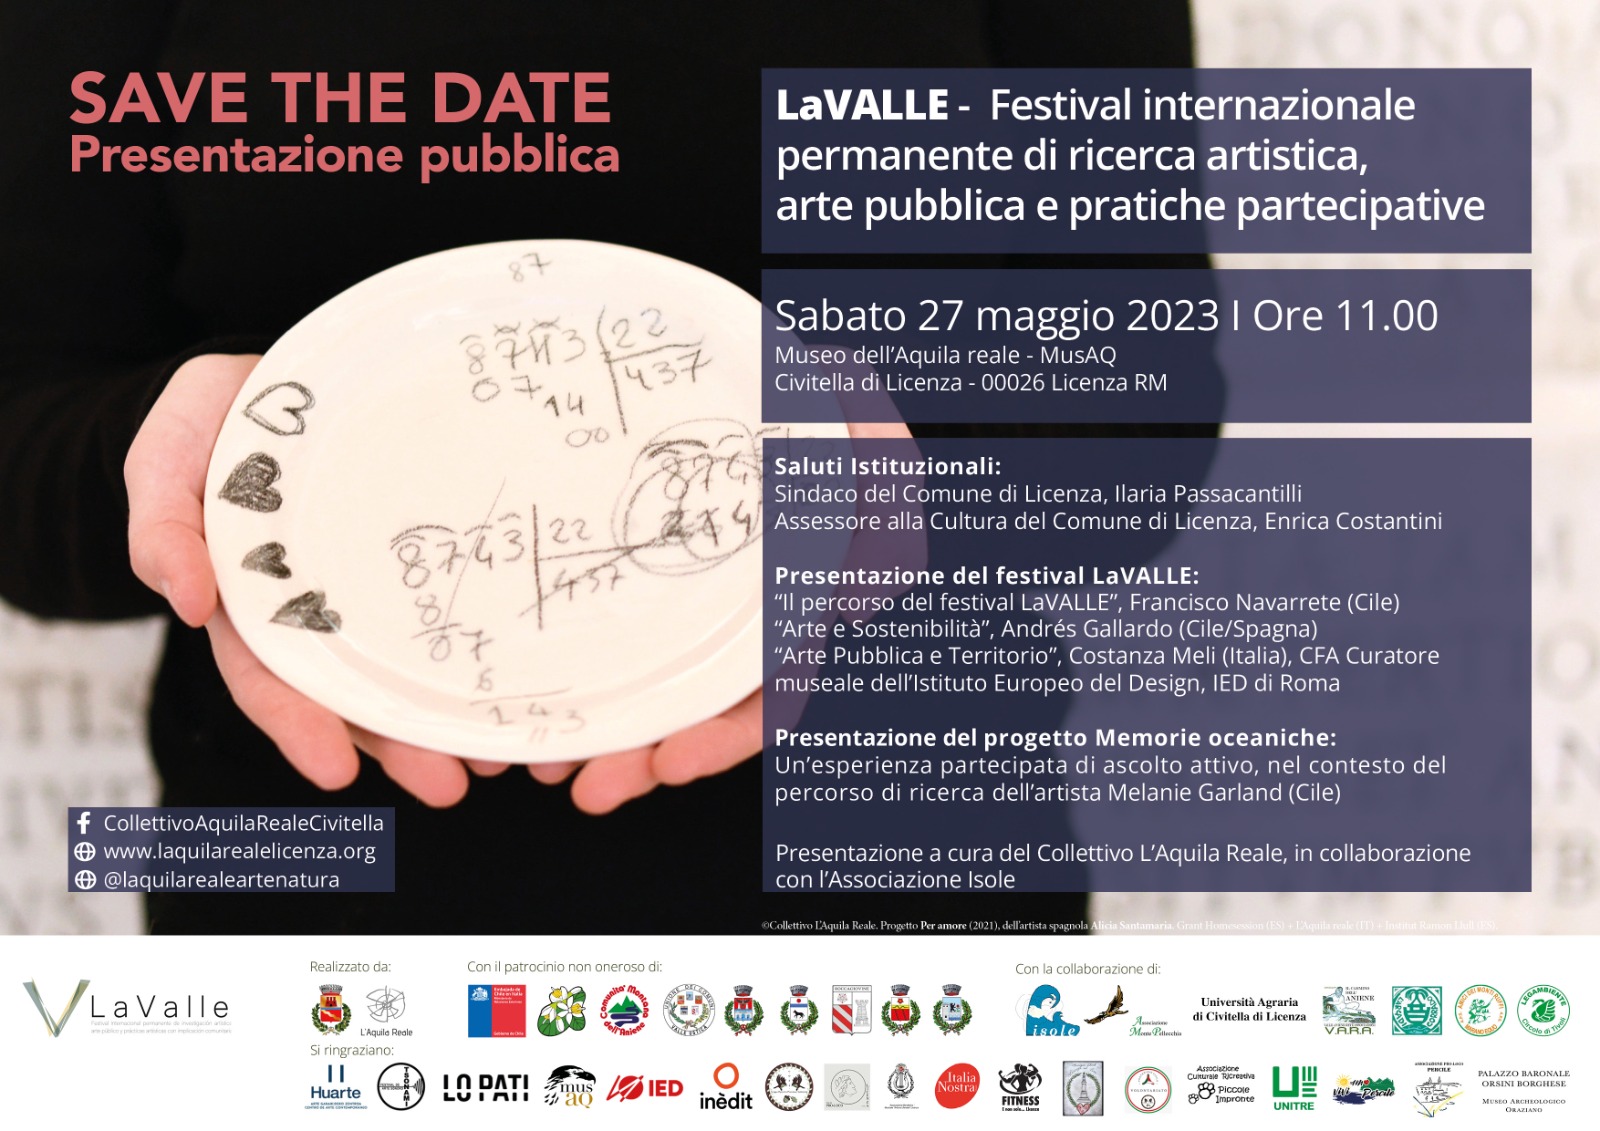 https://www.agenziaeventi.org/immagini_news/3580/licenza-sabato-27-maggio-lavalle-festival-internazionale-permanente-di-ricerca-artistica-arte-pubblica-e-pratiche-partecipative-3580.jpg